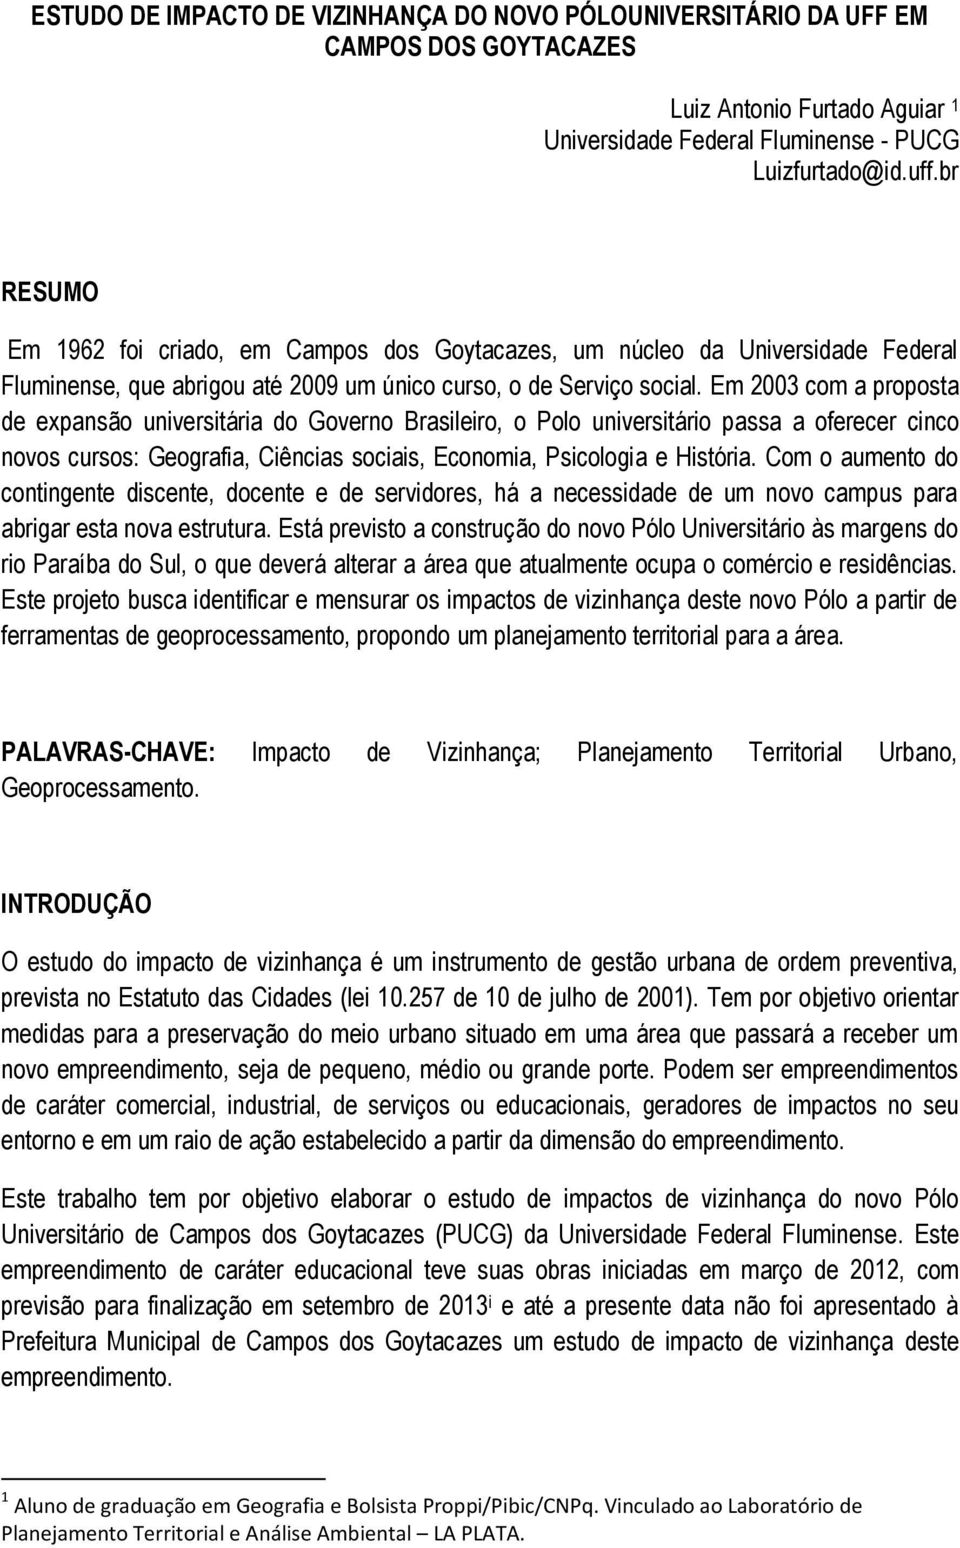 Em 2003 com a proposta de expansão universitária do Governo Brasileiro, o Polo universitário passa a oferecer cinco novos cursos: Geografia, Ciências sociais, Economia, Psicologia e História.